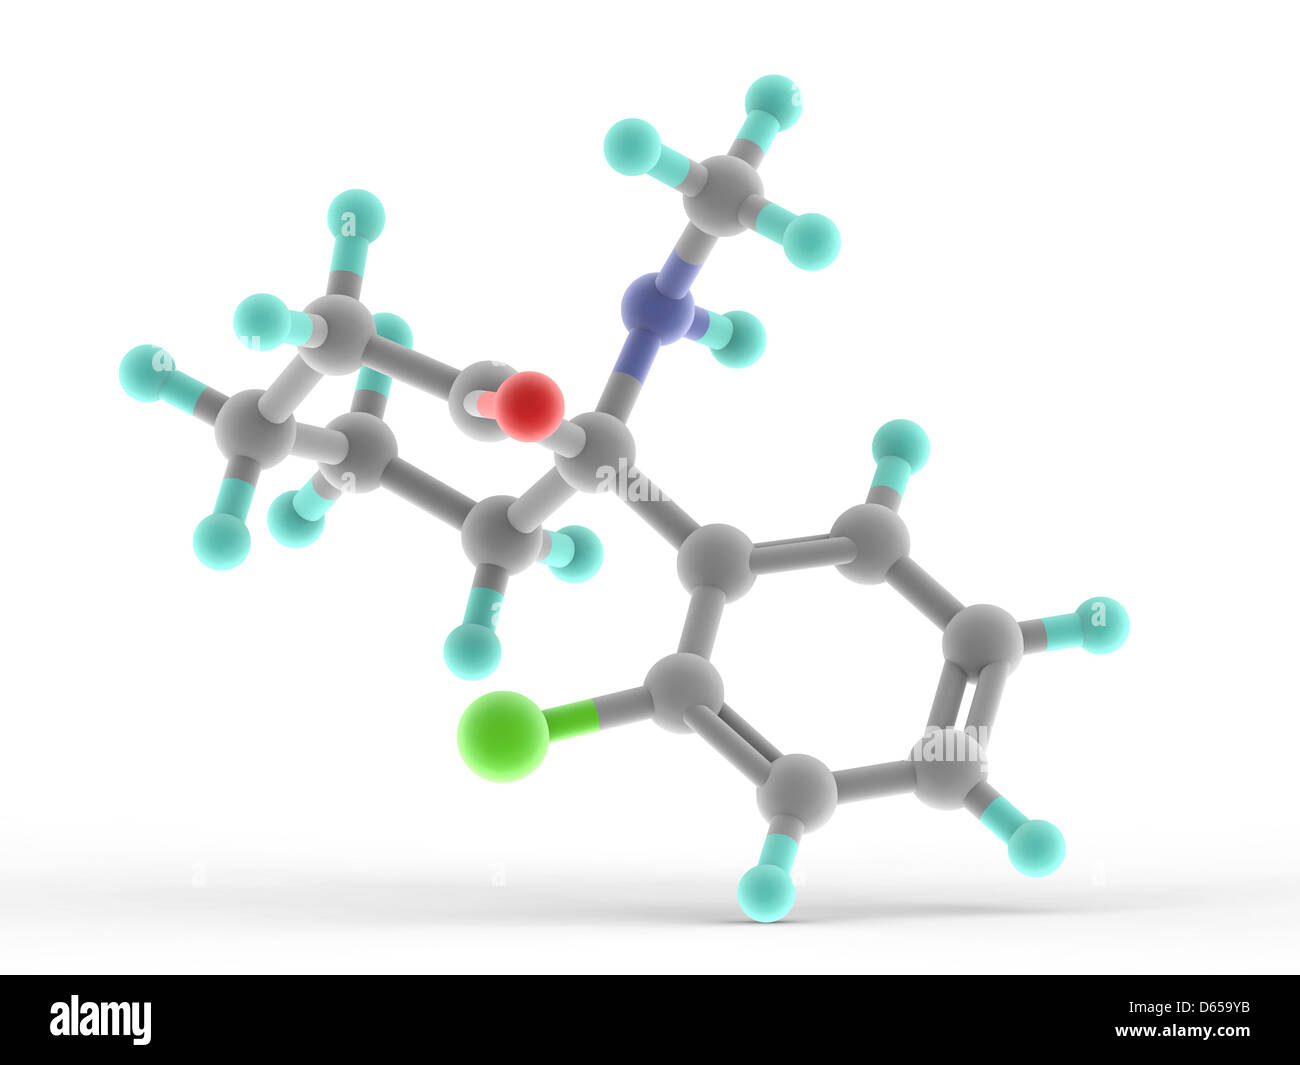 Ketamine drug molecule Stock Photo